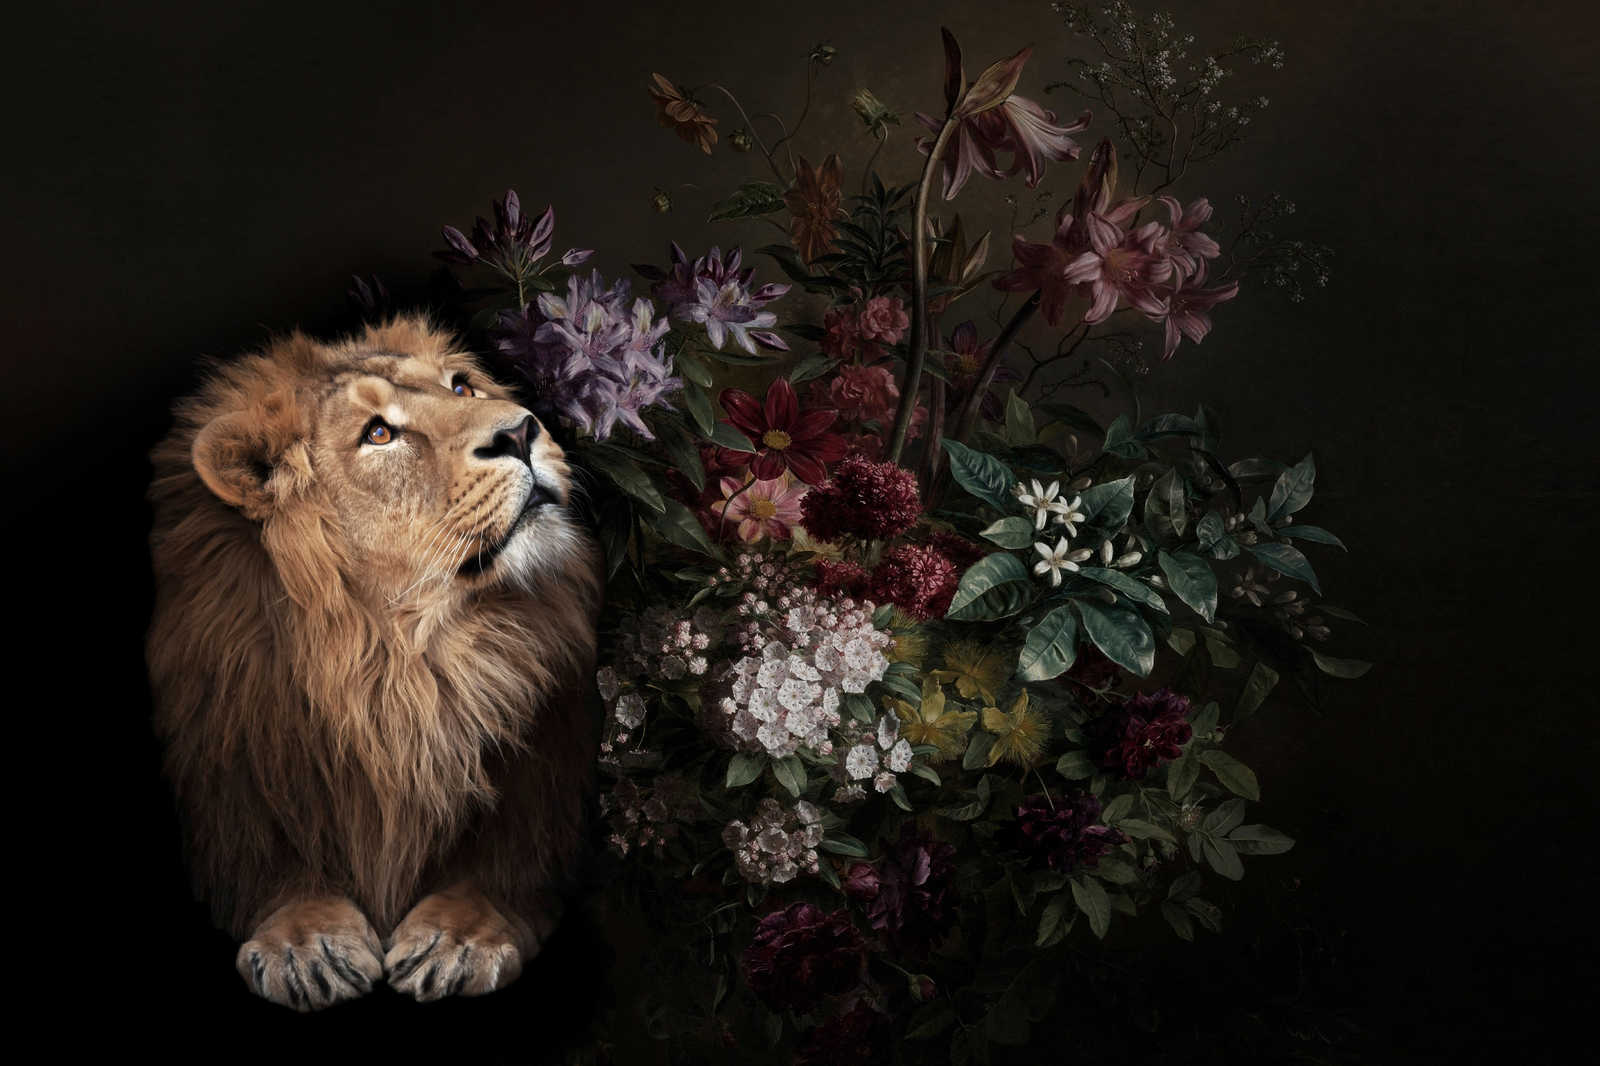             Tableau toile Portrait de lion avec fleurs - 0,90 m x 0,60 m
        